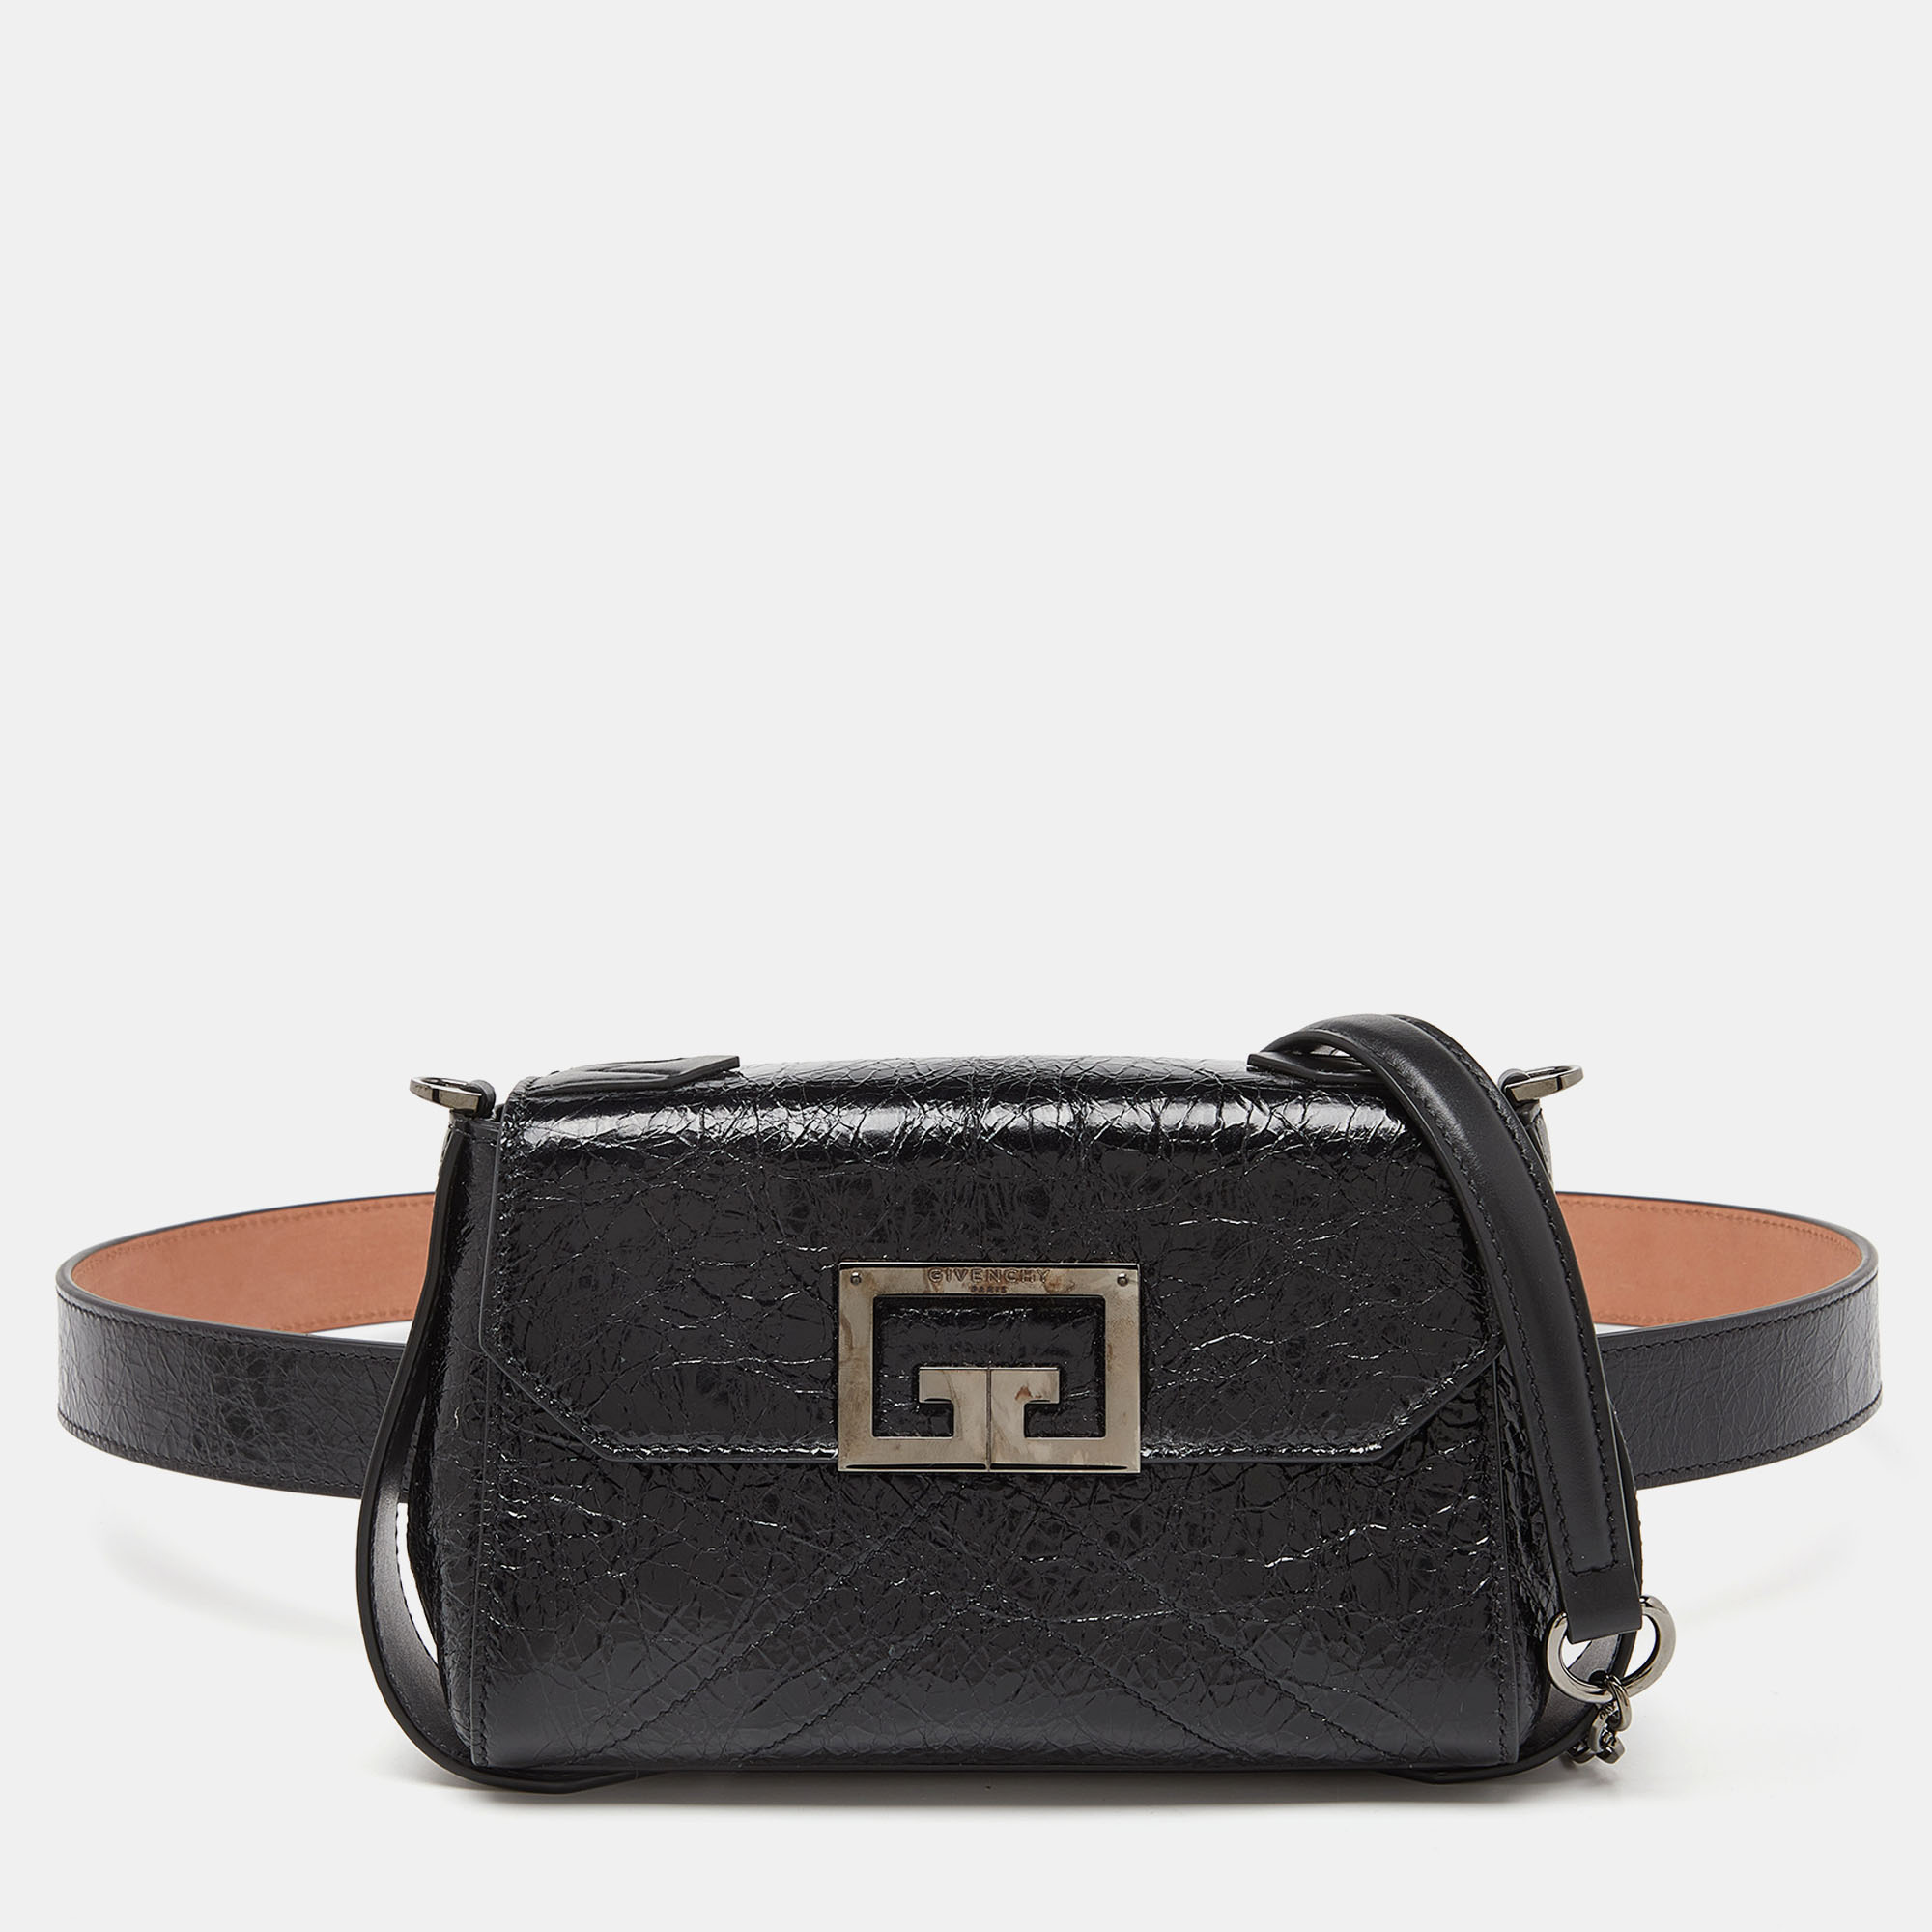 Givenchy black leather belt bag